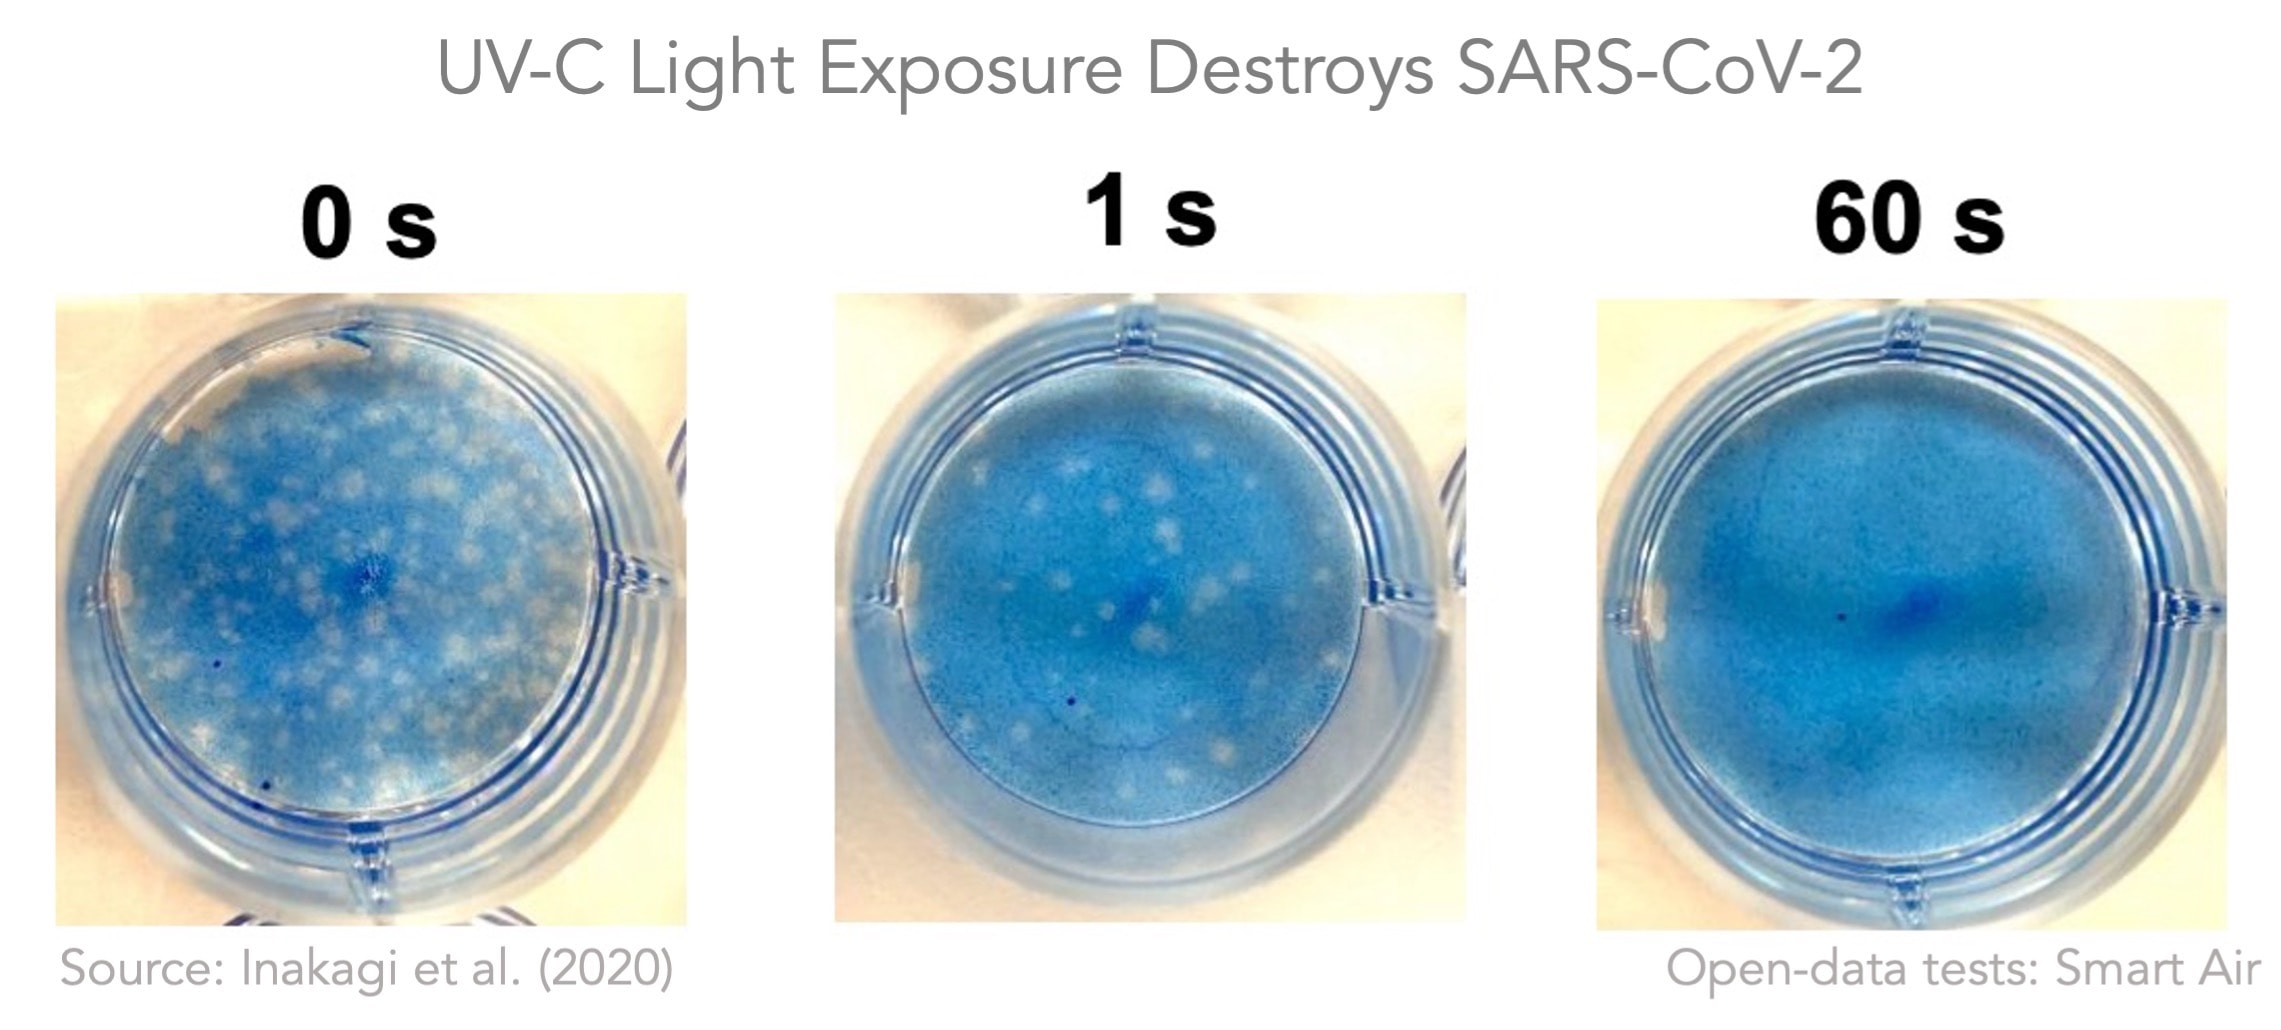 La luz ultravioleta inactiva el virus SARS-CoV-2